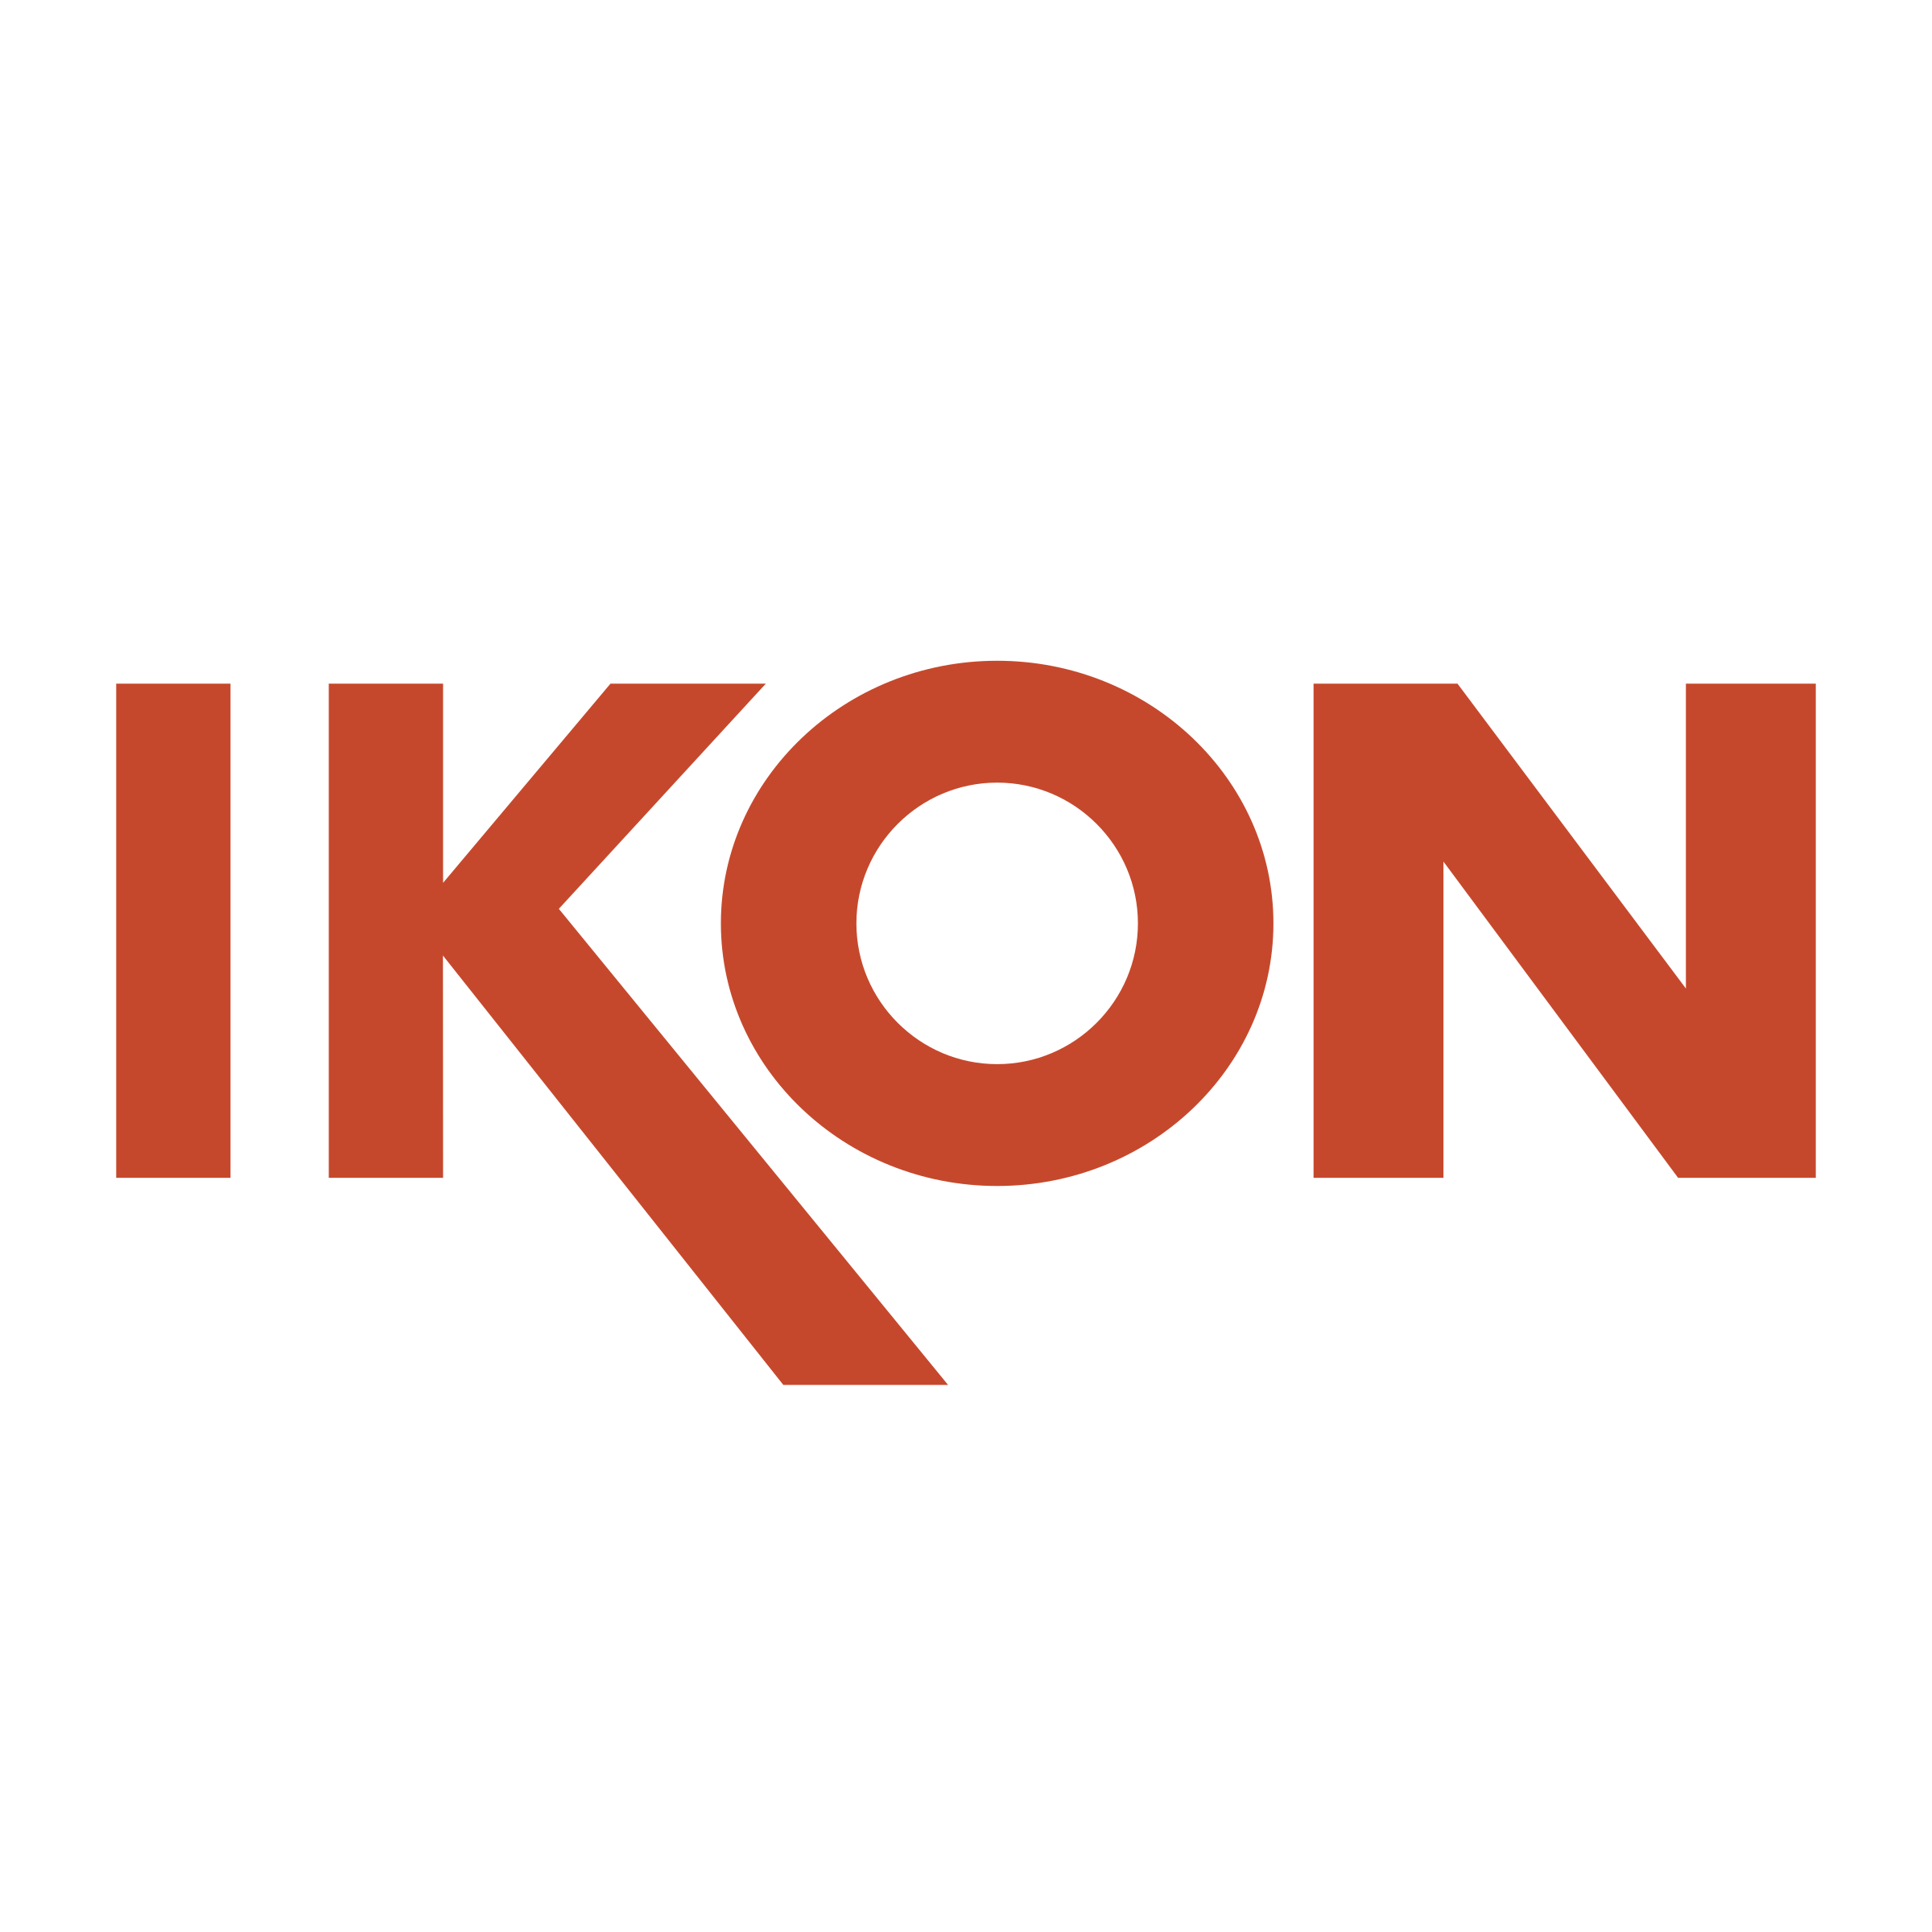 Ikon Logo - Ikon Logo PNG Transparent & SVG Vector